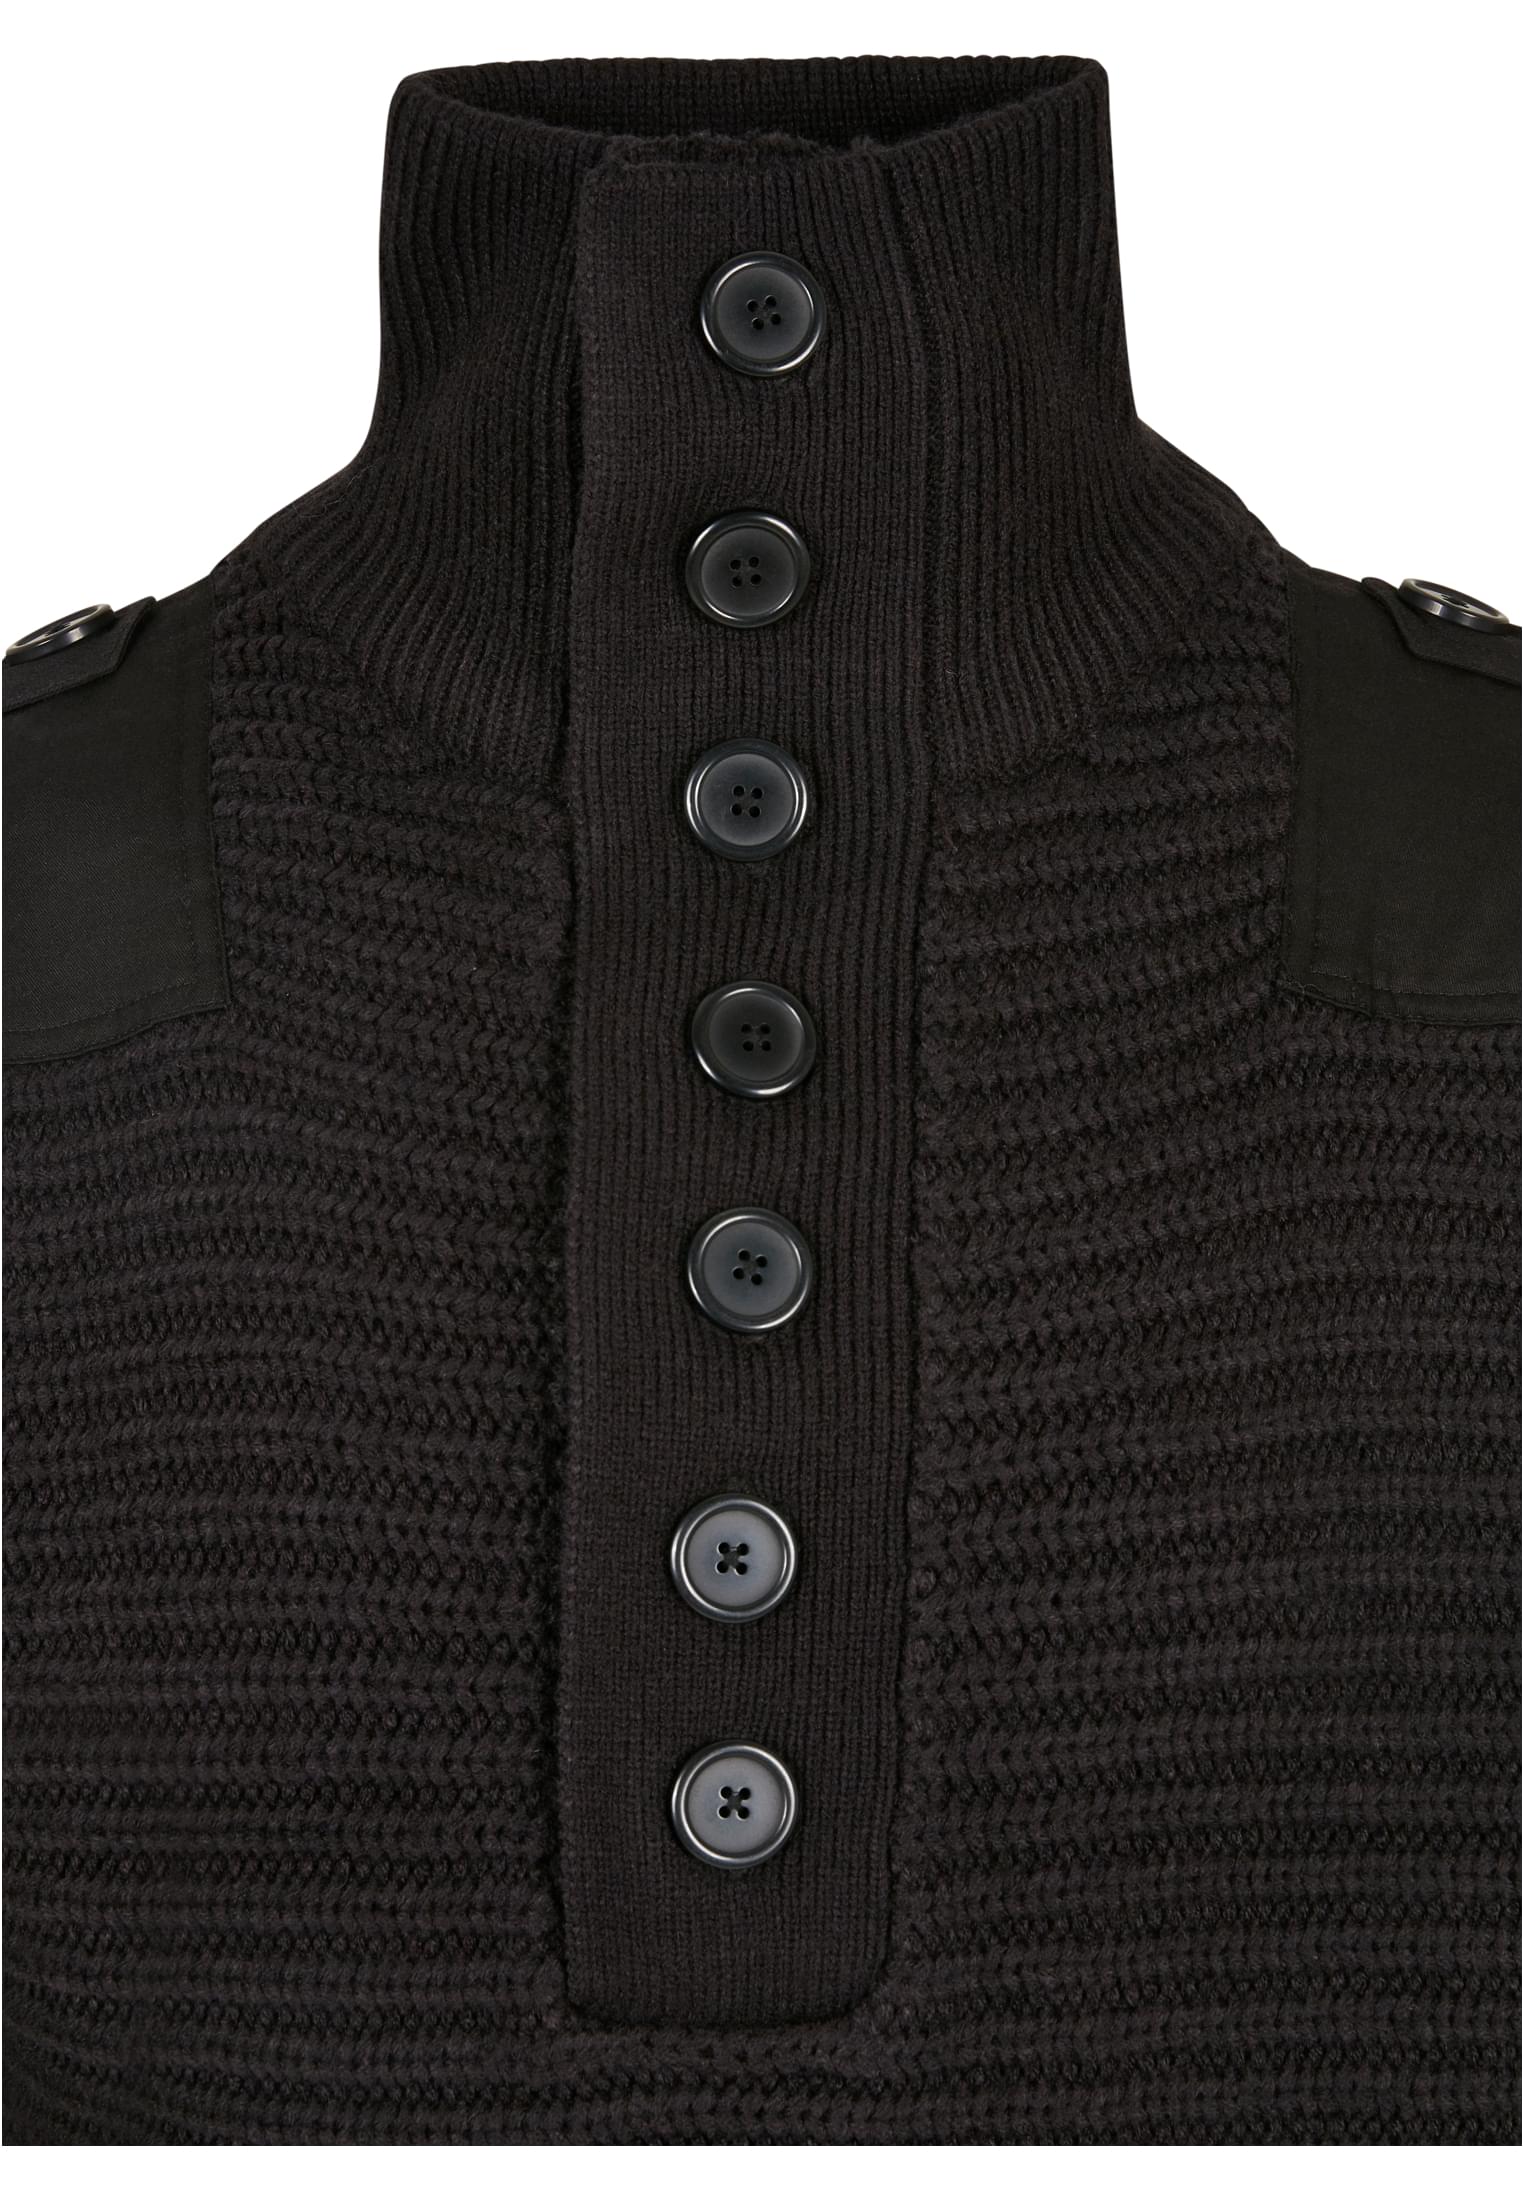 Pullover Alpin Pullover in Farbe black